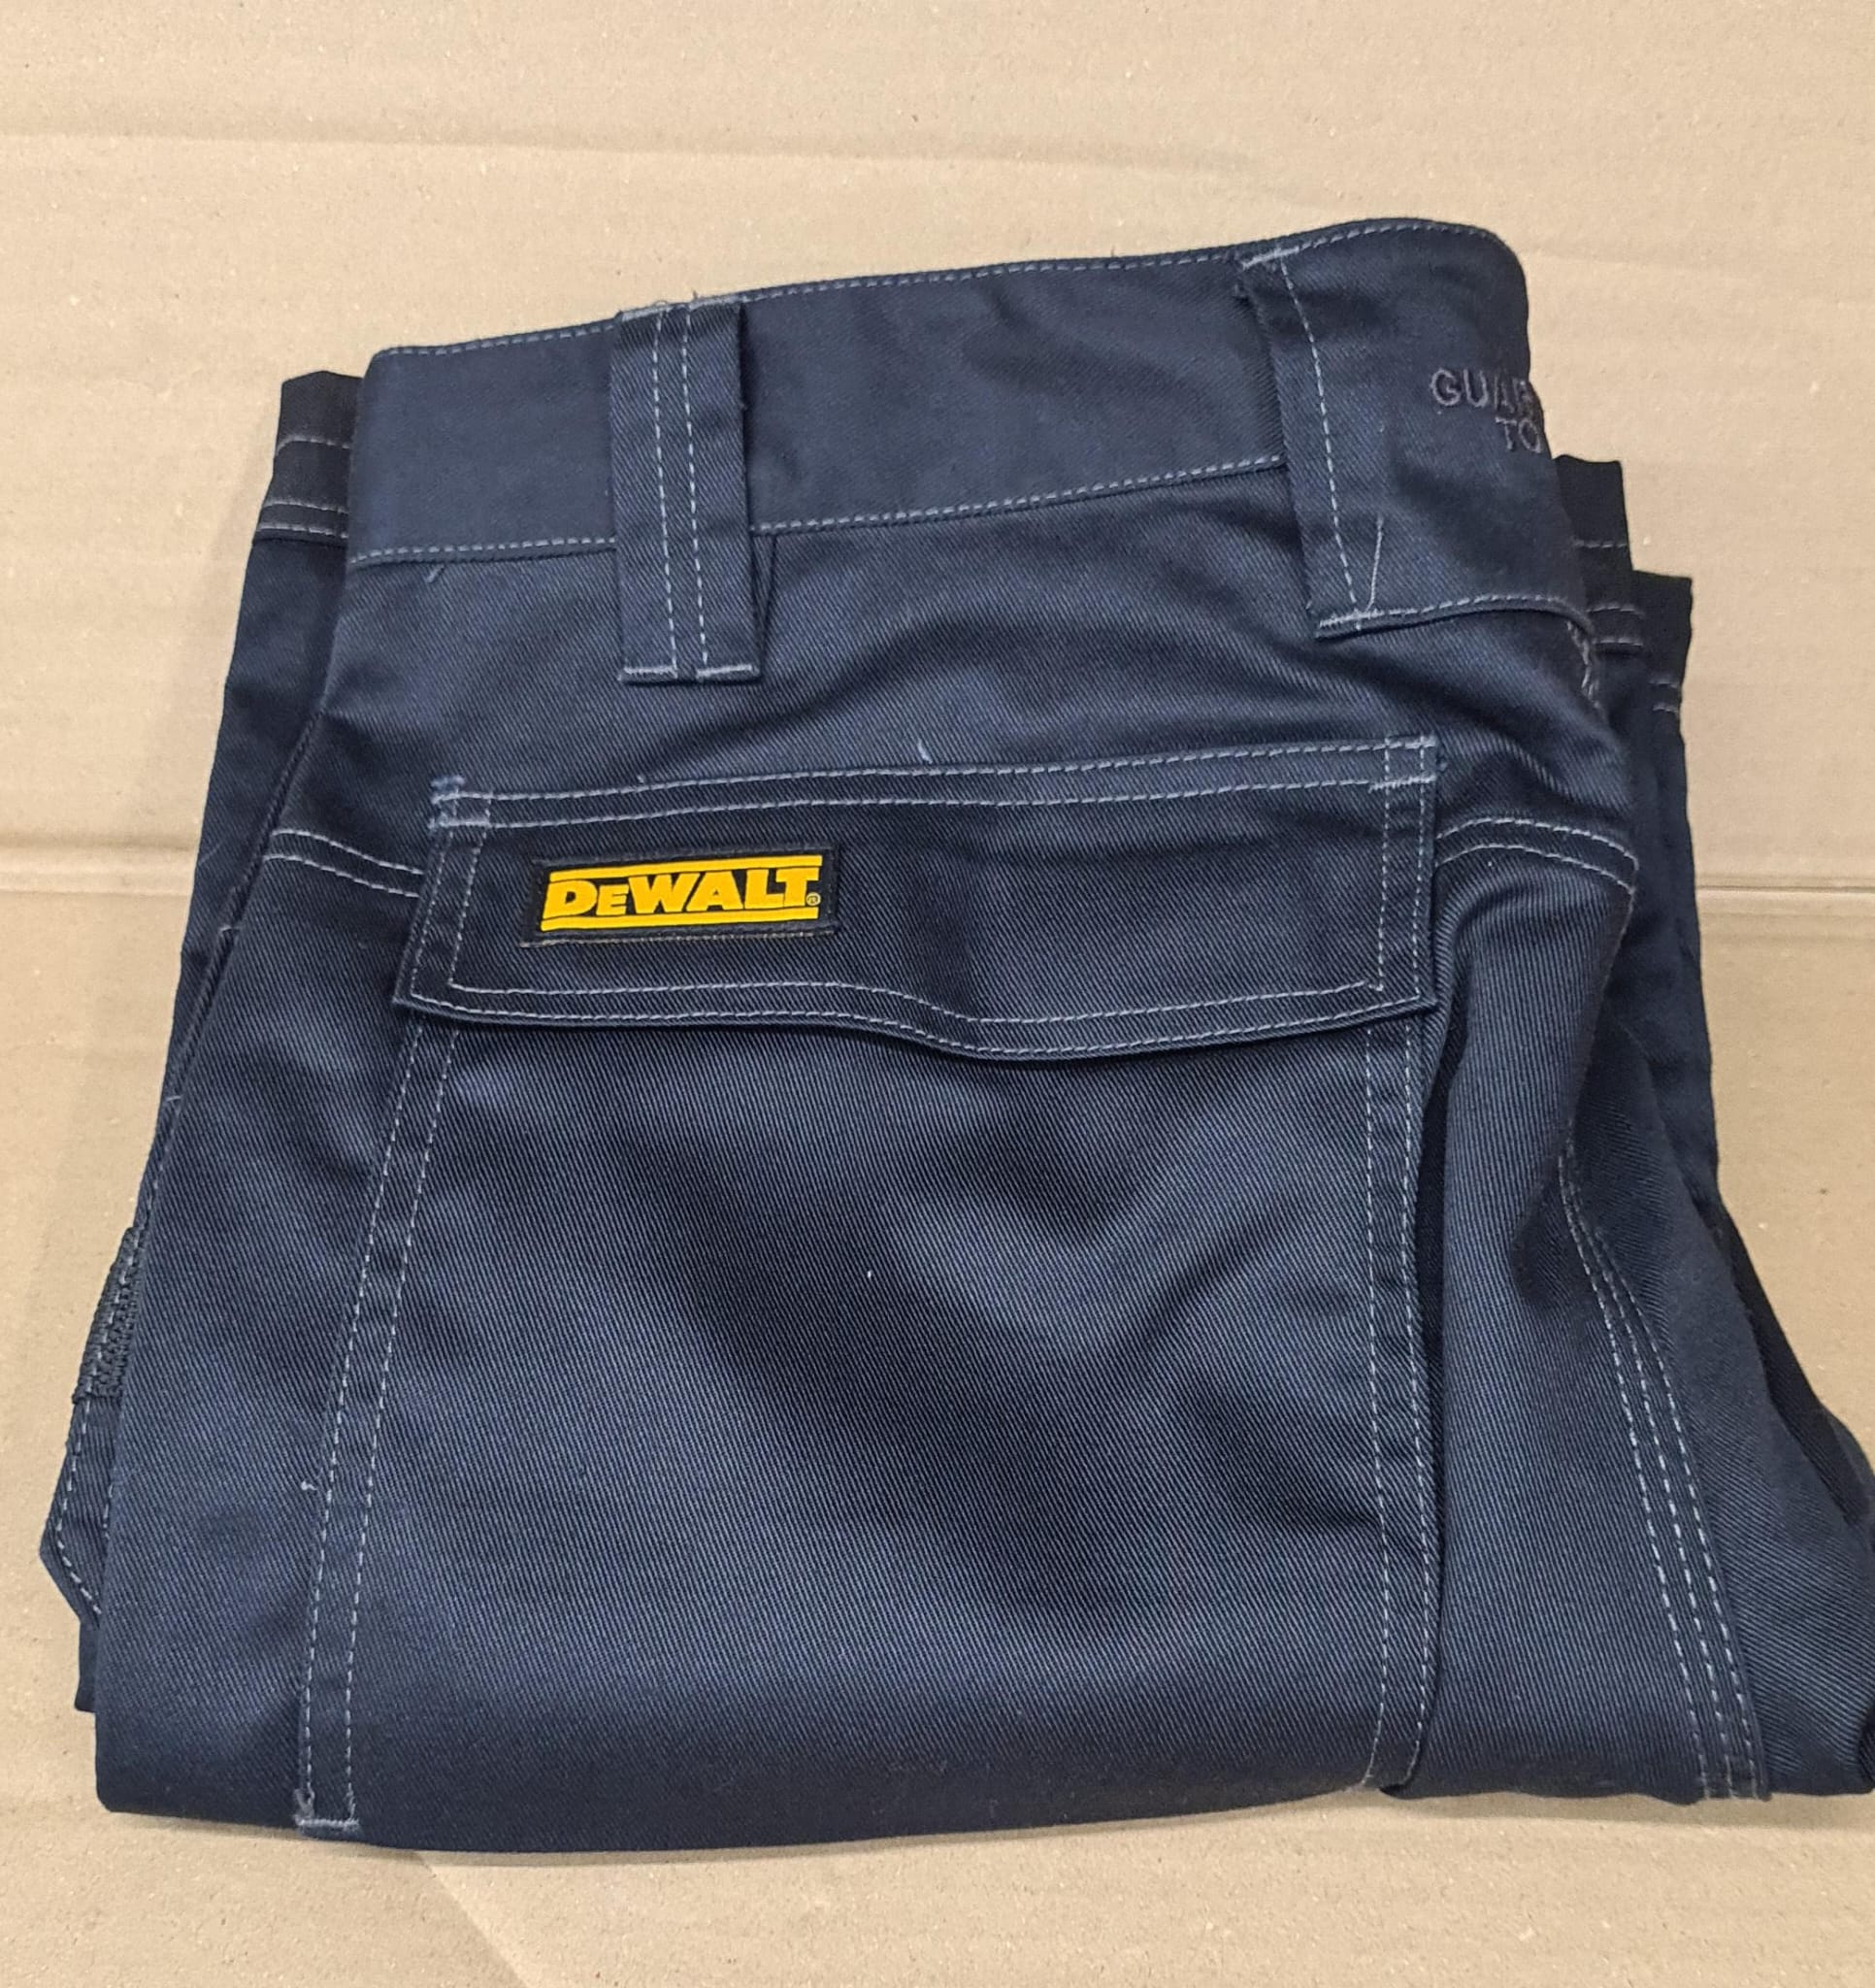 DEWALT Men's Harrison Work Utility Pants Size 36-0012